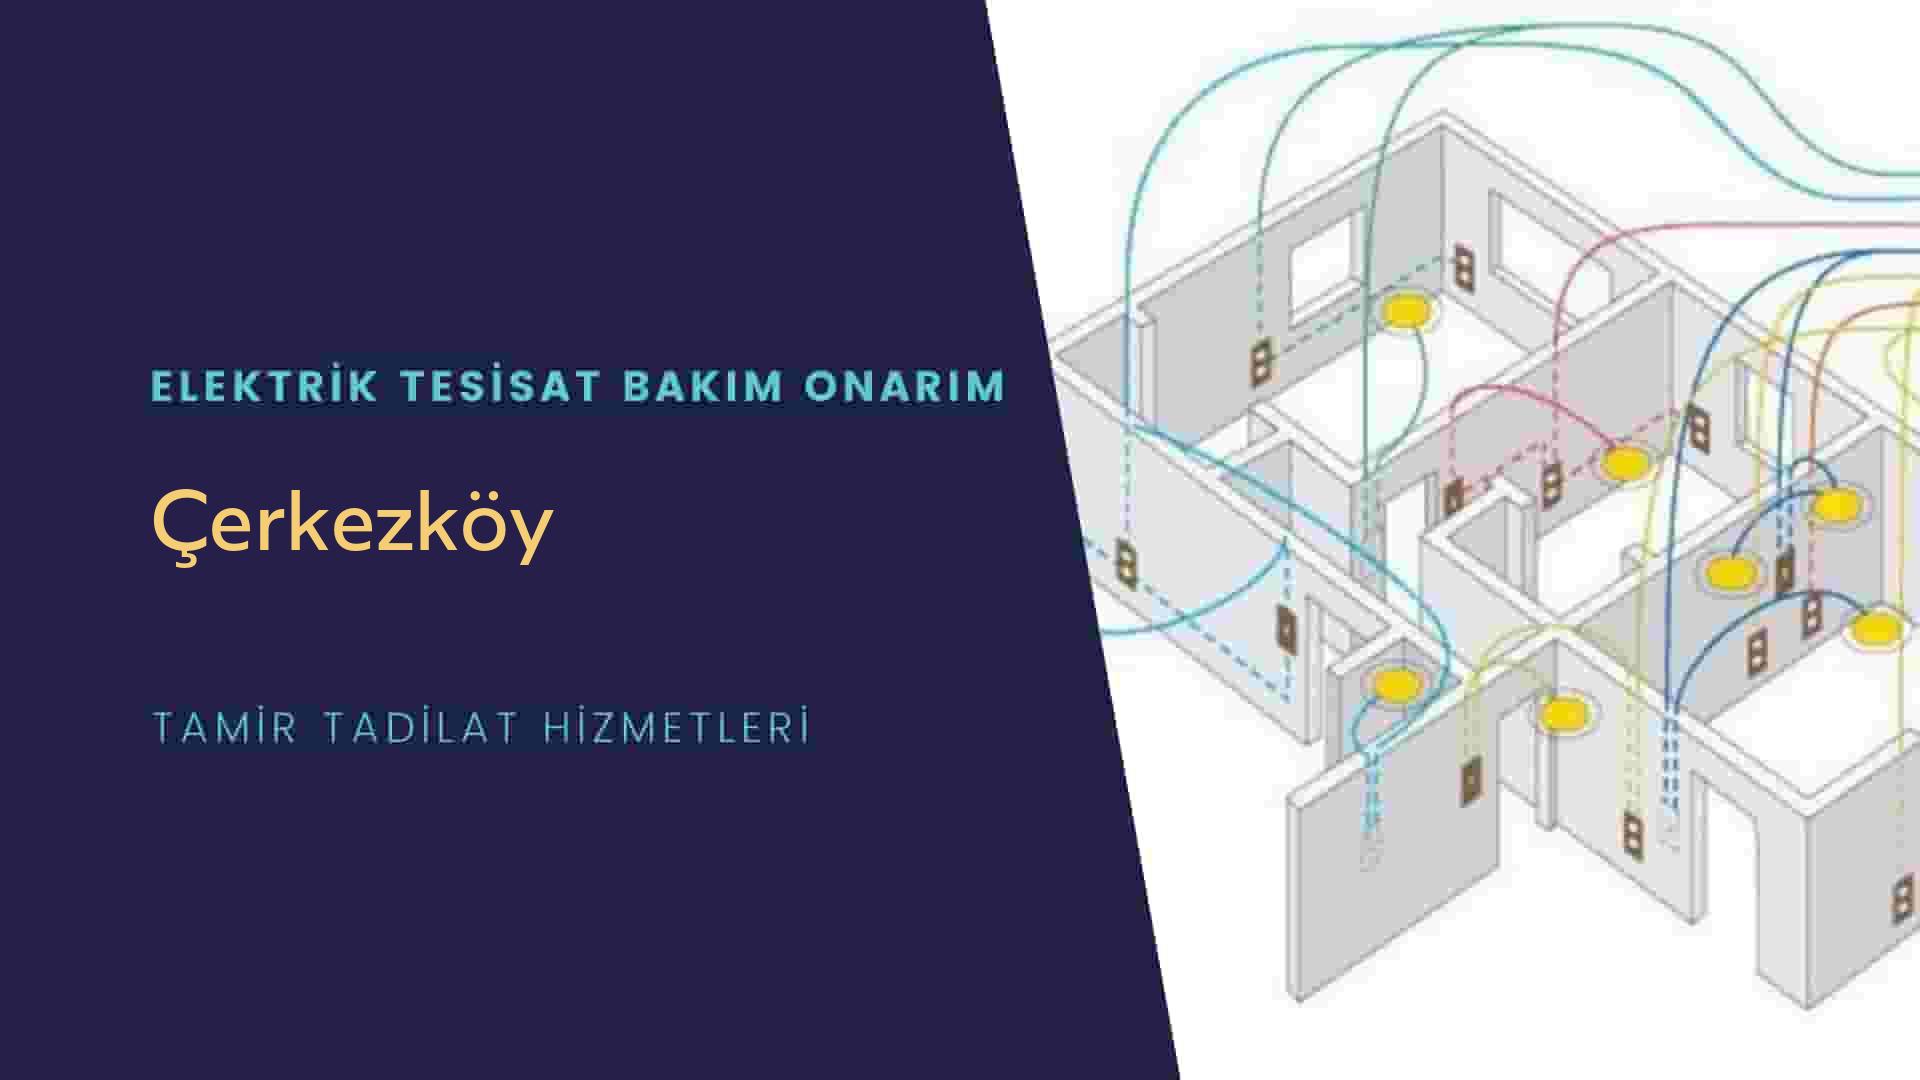 Çerkezköy'de elektrik tesisatı ustalarımı arıyorsunuz doğru adrestenizi Çerkezköy elektrik tesisatı ustalarımız 7/24 sizlere hizmet vermekten mutluluk duyar.